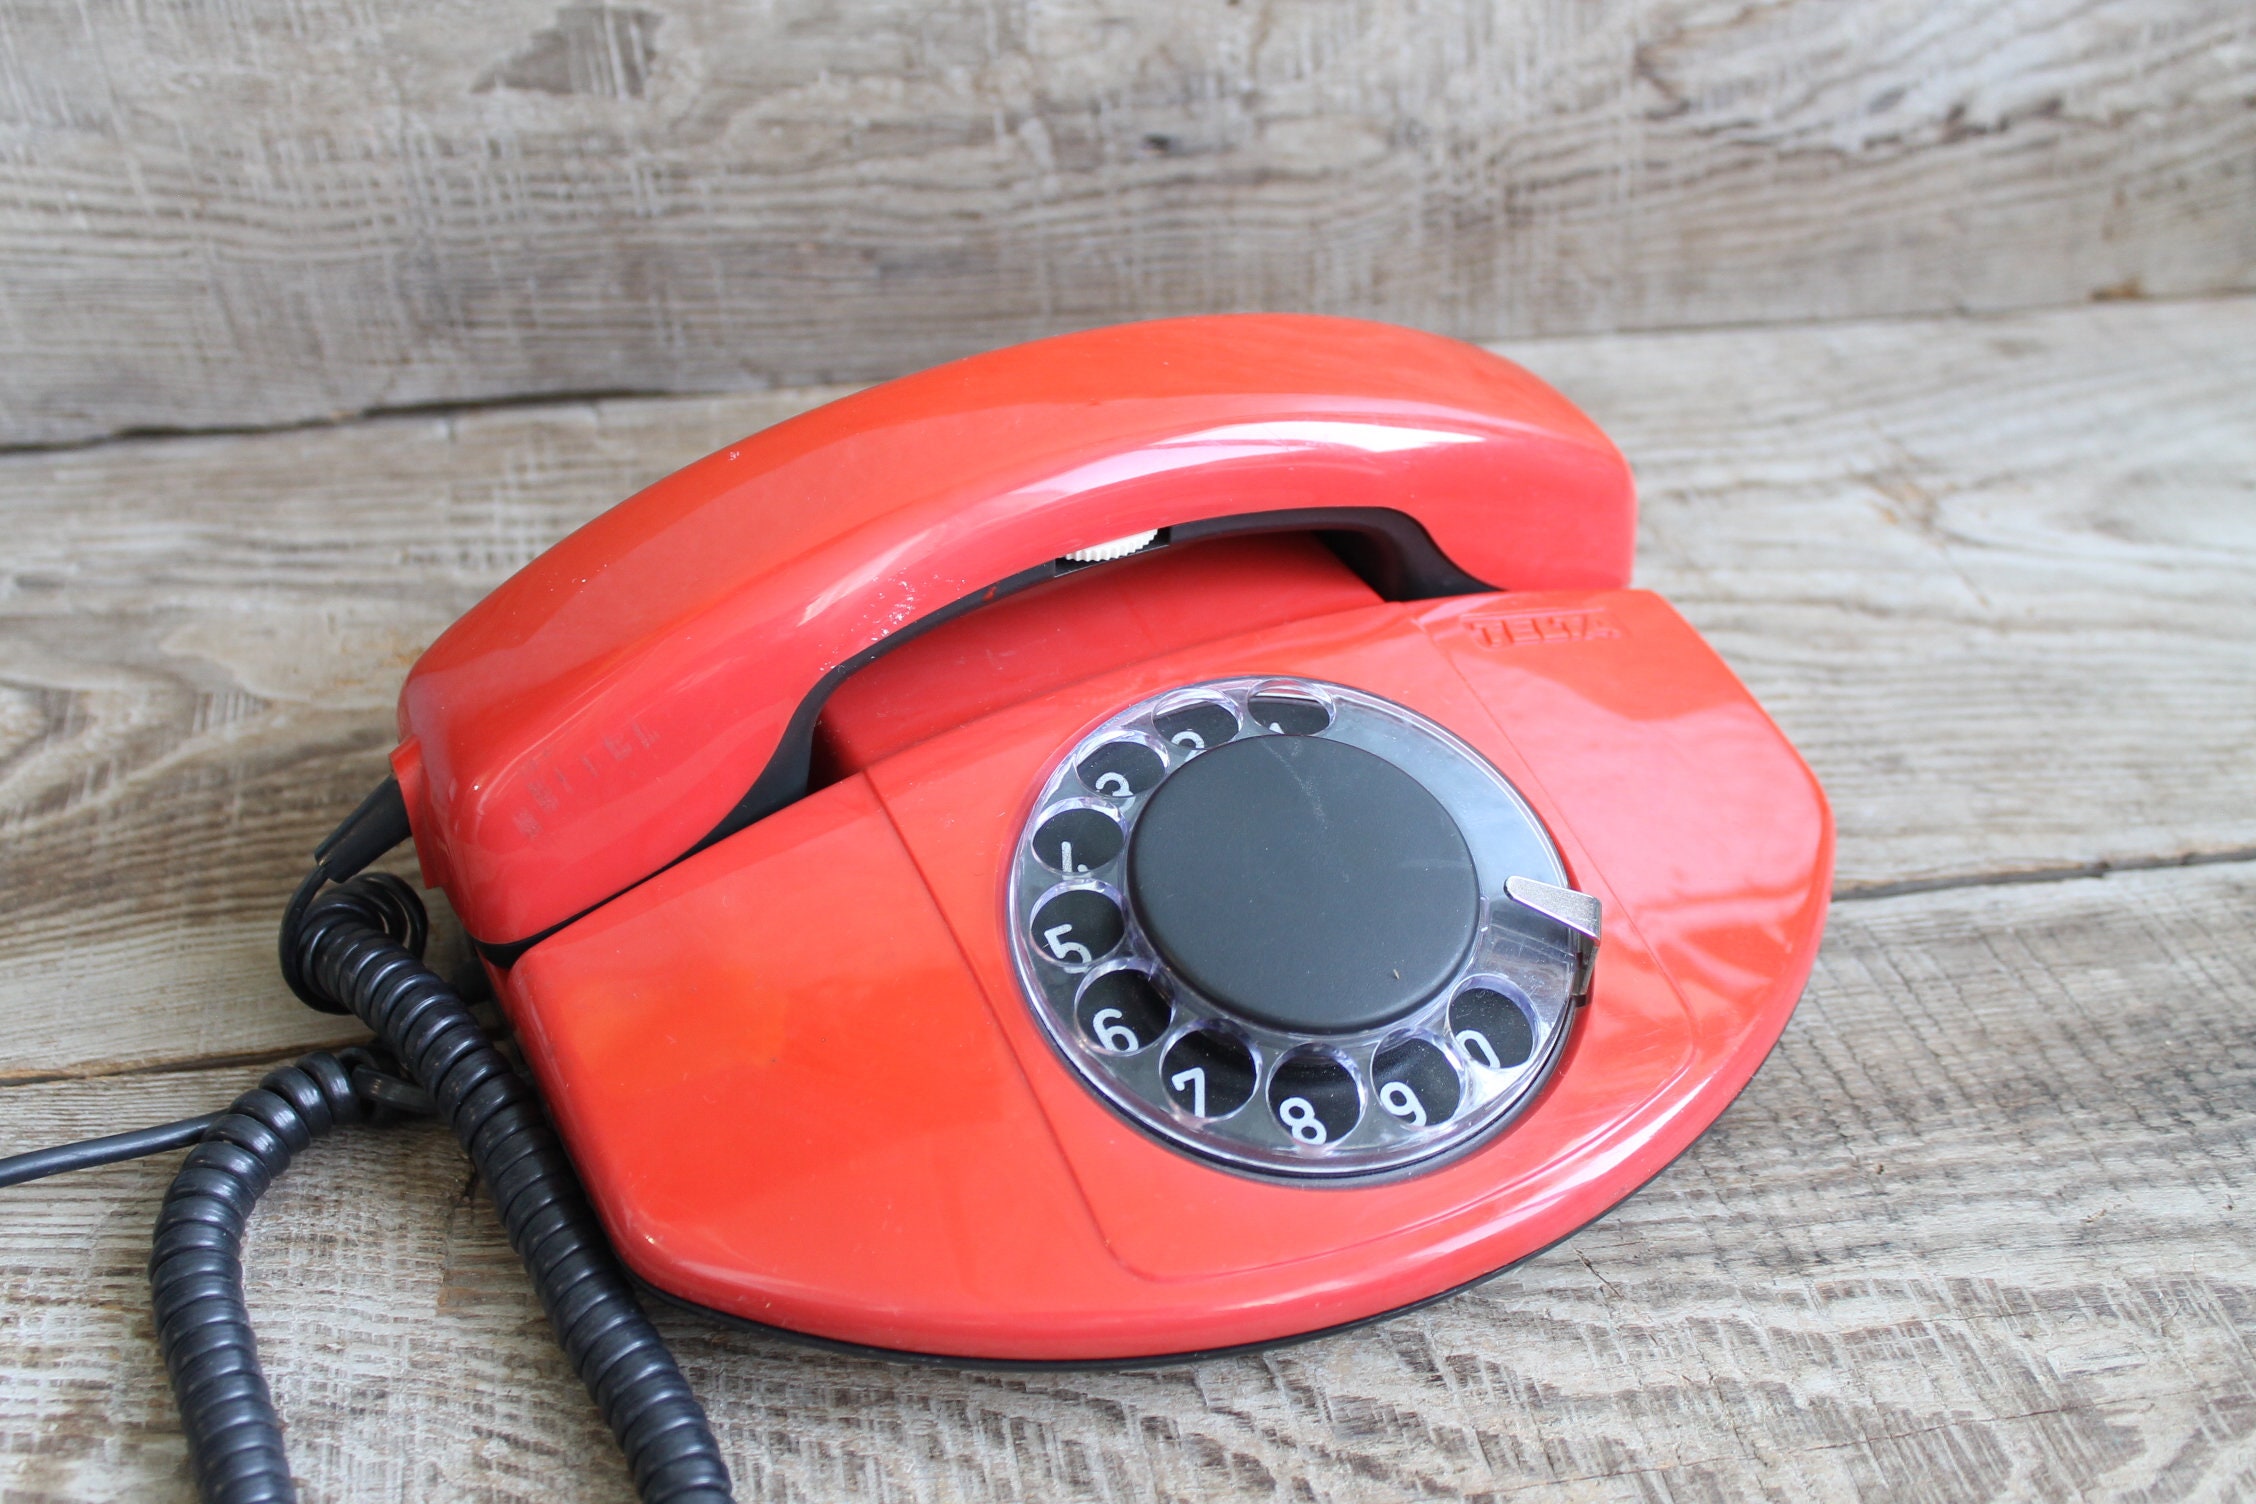 Téléphone rouge soviétique fonctionnel. Téléphone fixe vintage TELTA années  80. Rare téléphone à cadran de l'URSS. décoration de maison. -  France